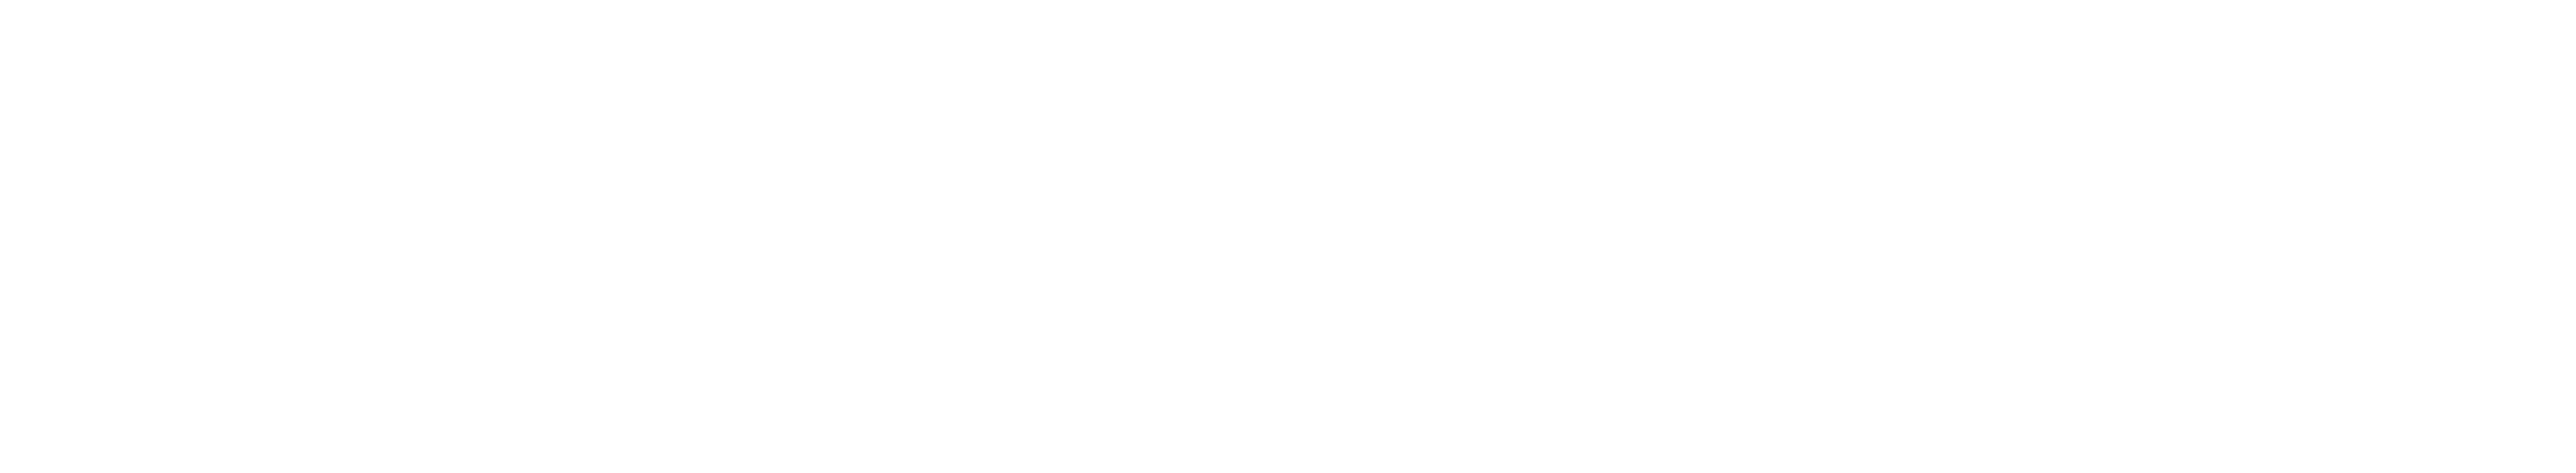 Ajuntament de Torredembarra